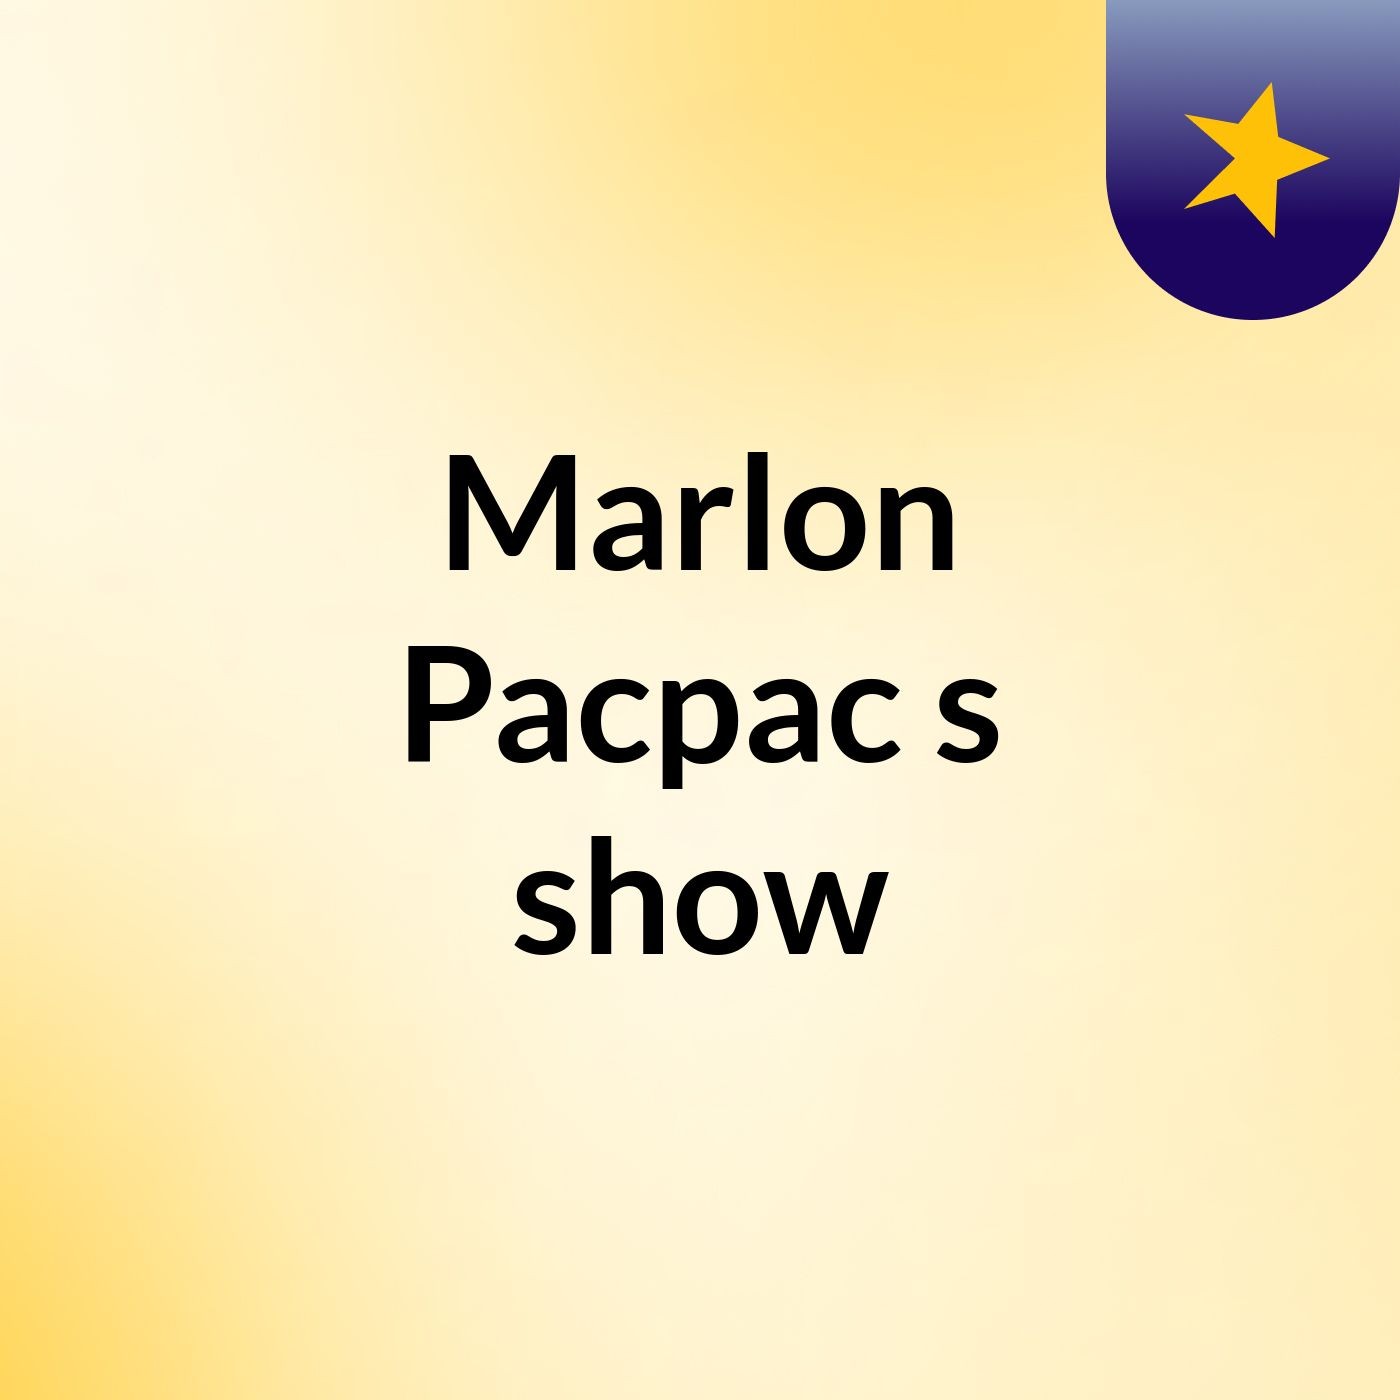 Marlon Pacpac's show